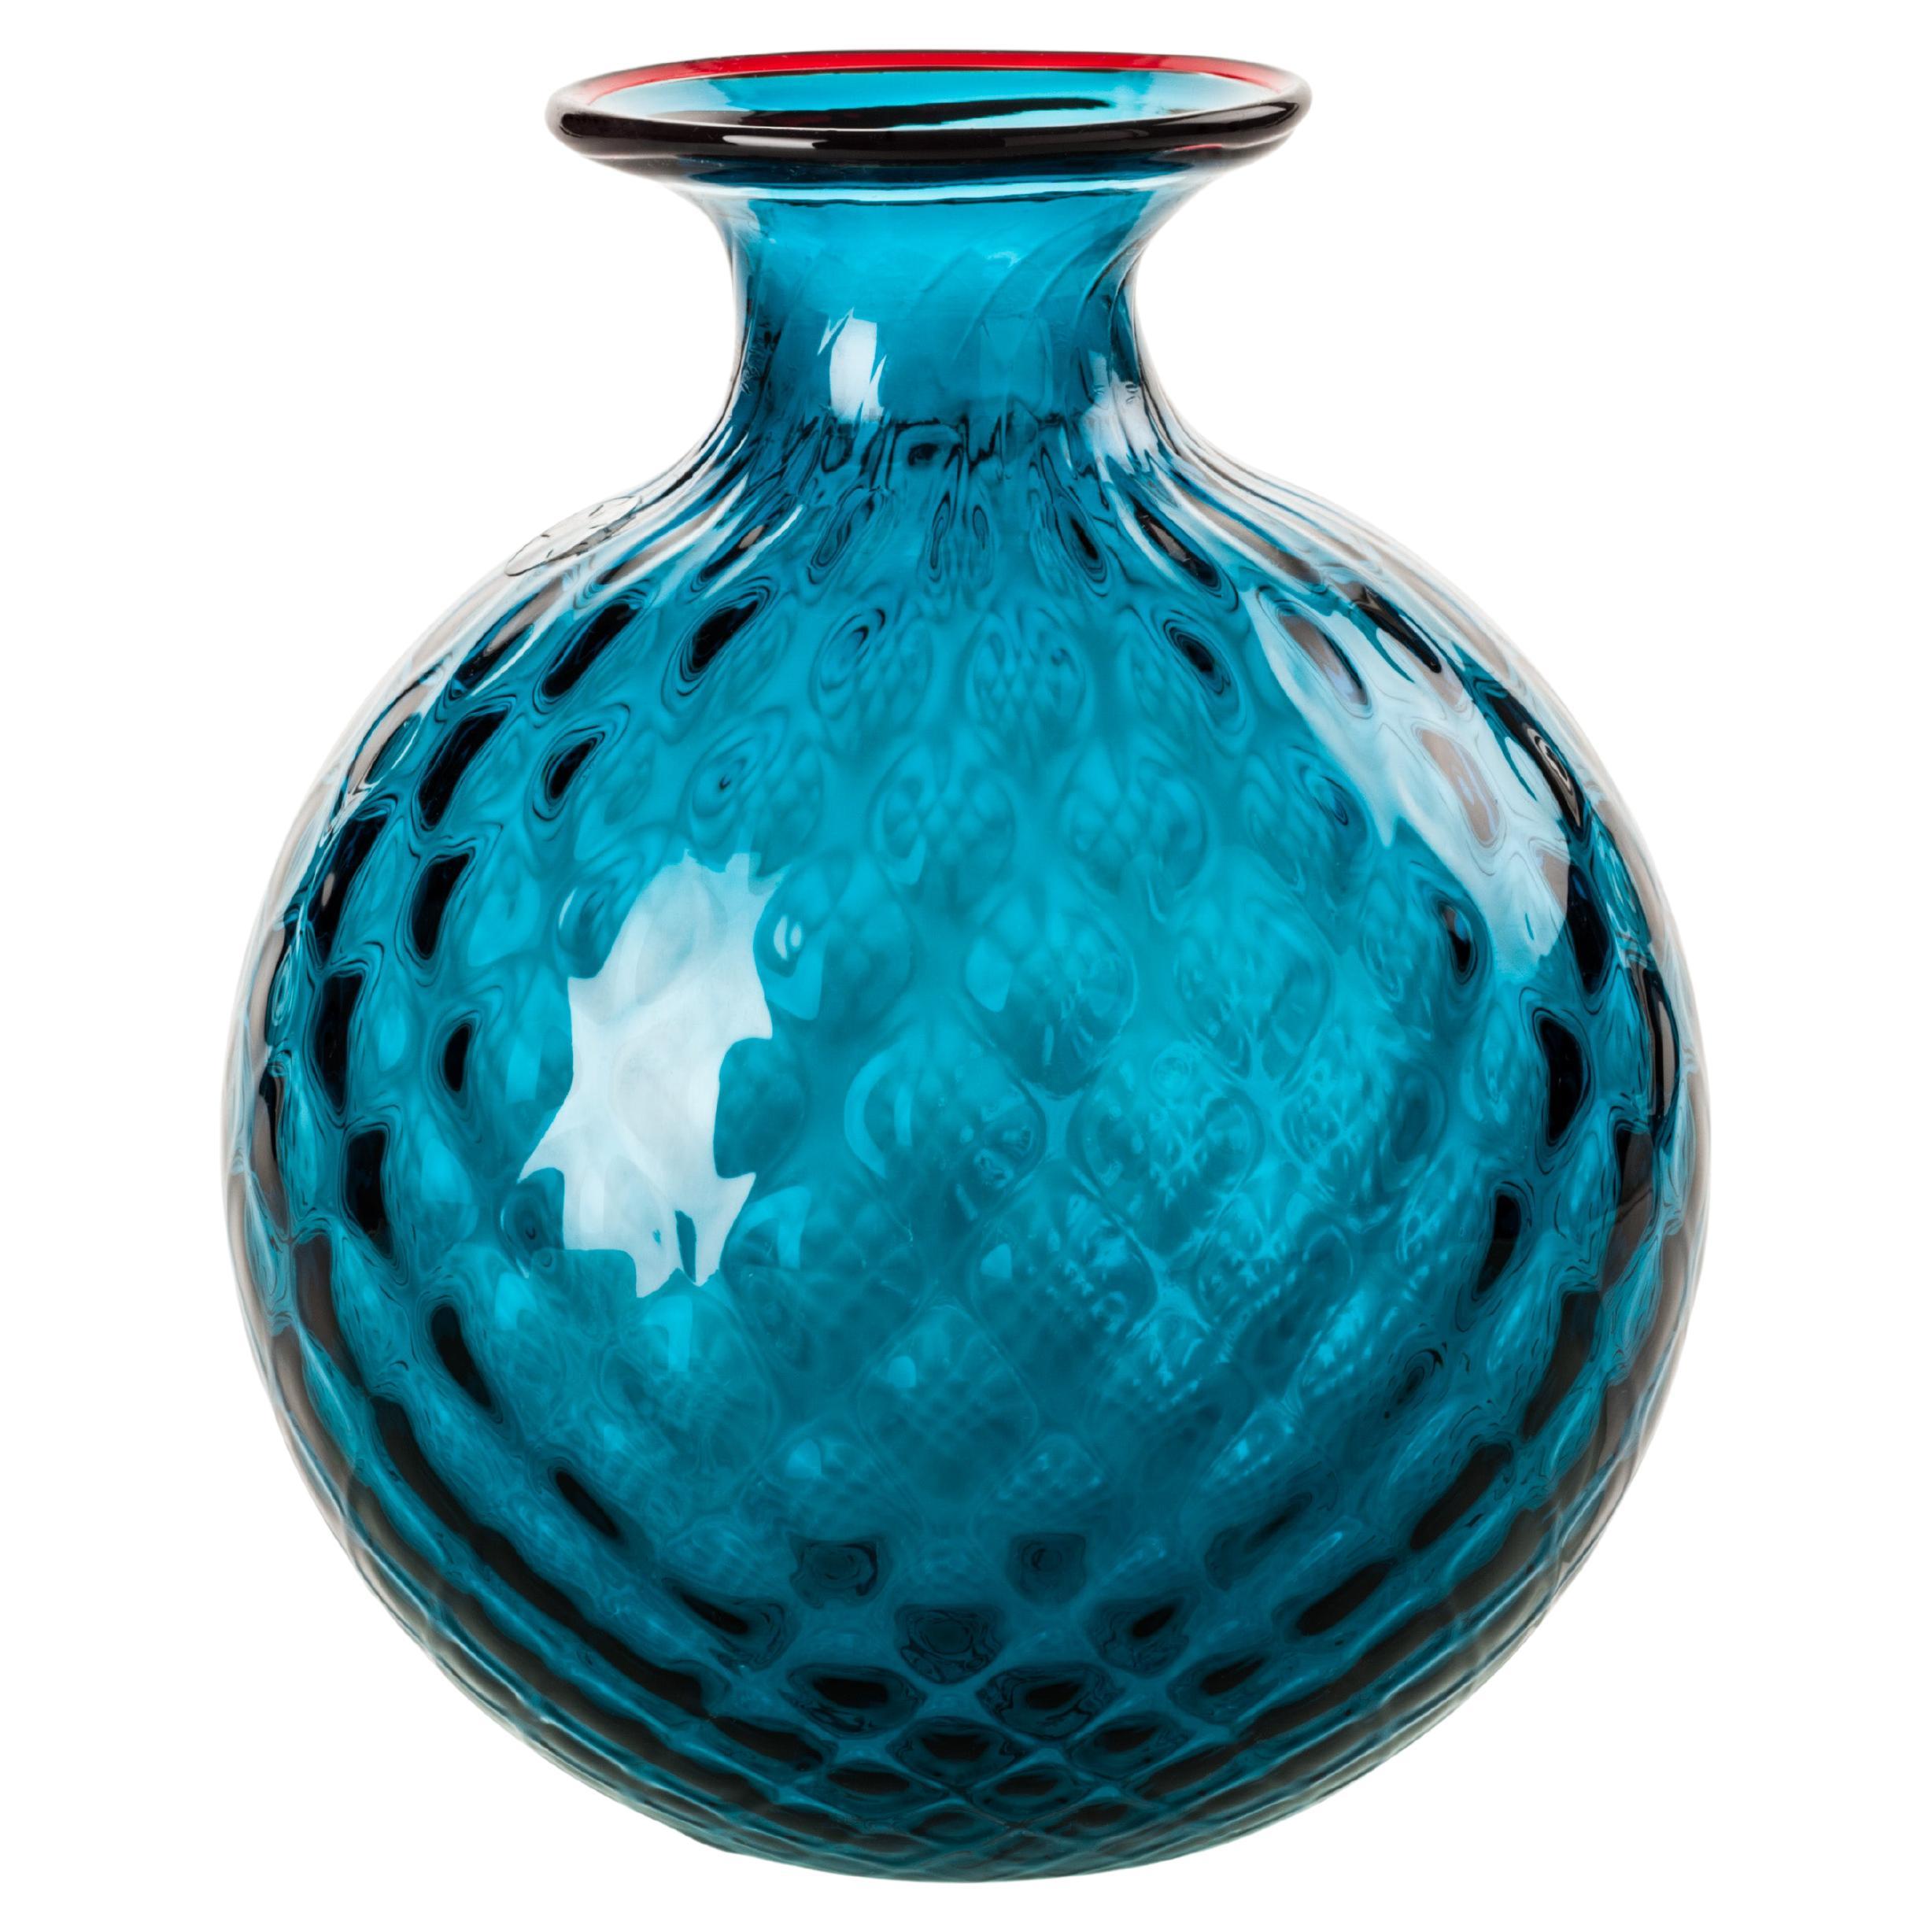 Monofiore Balloton Glass Vase in Horizon Red Thread by Venini